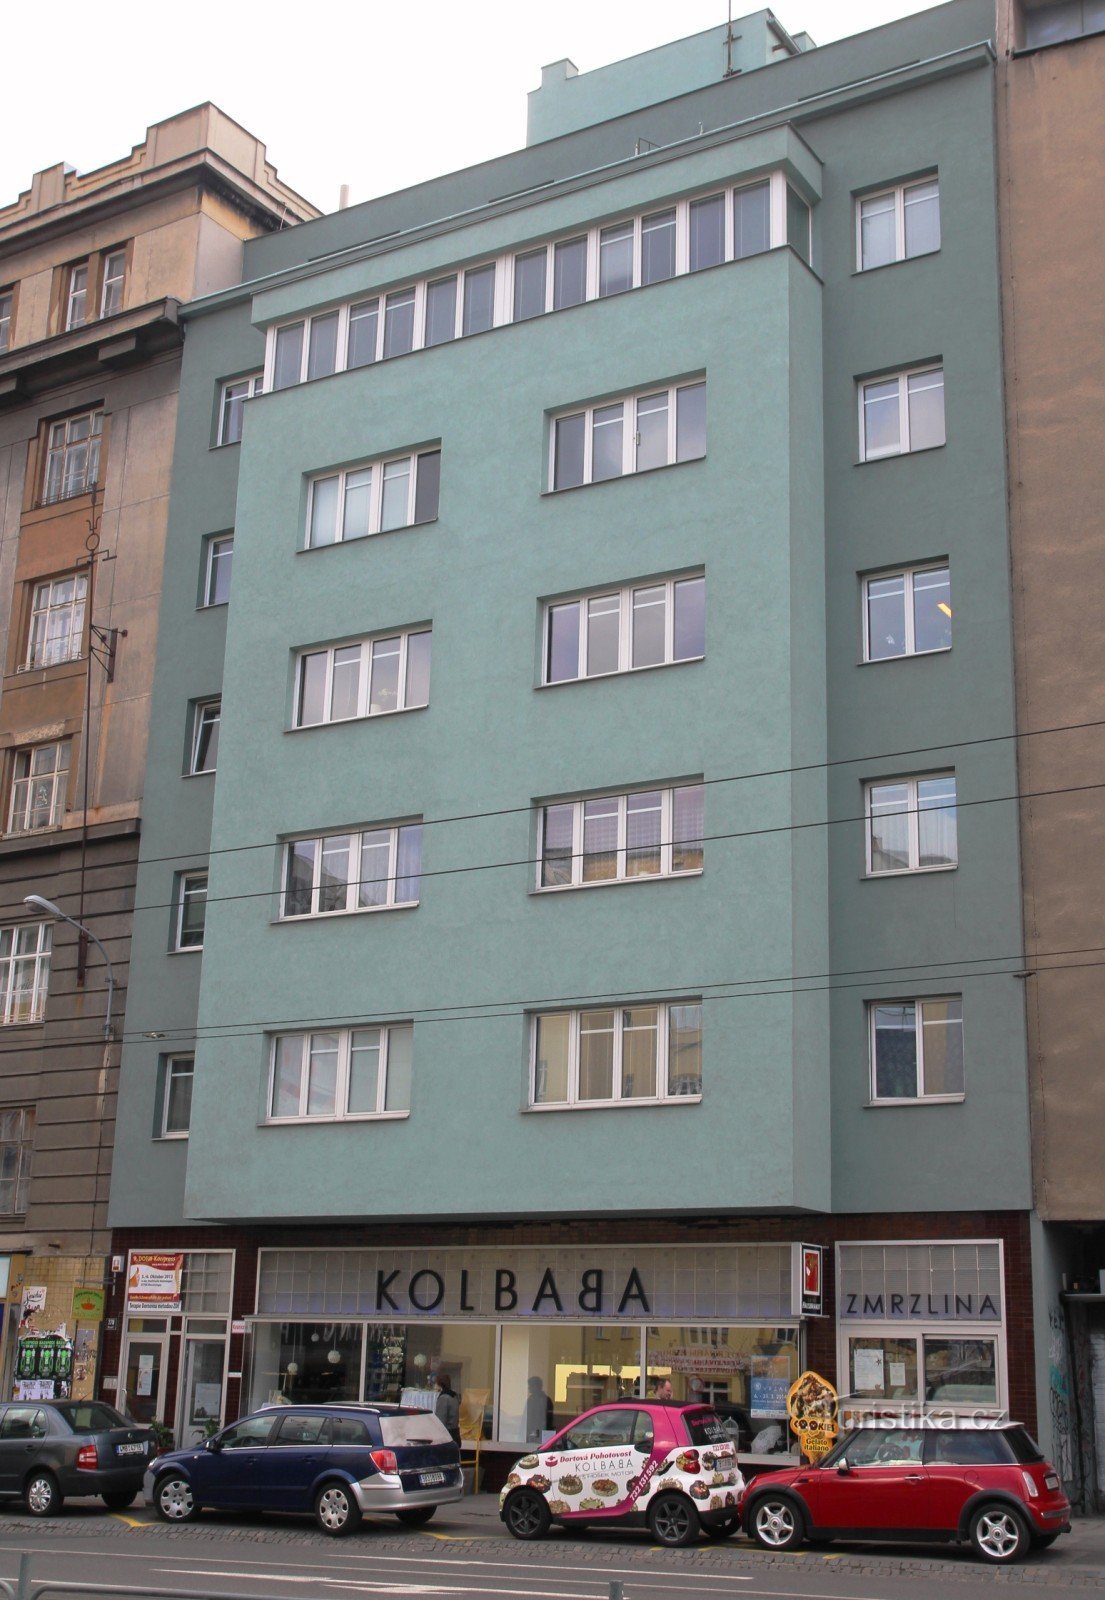 Nájemní dům Kolbaba na Kounicově ulici